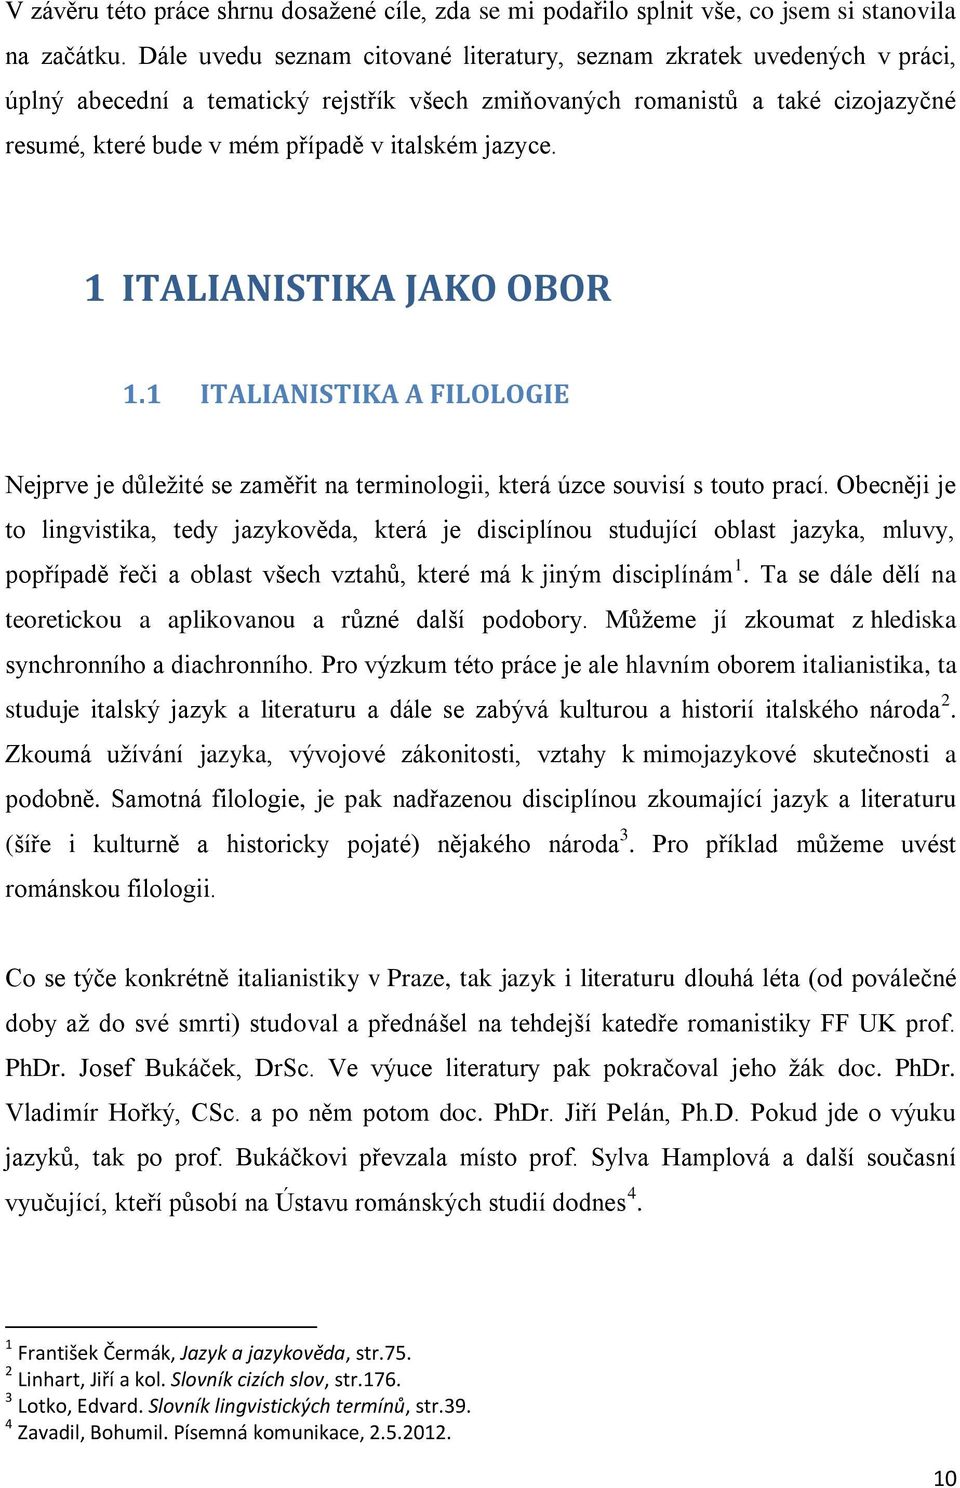 jazyce. 1 ITALIANISTIKA JAKO OBOR 1.1 ITALIANISTIKA A FILOLOGIE Nejprve je důležité se zaměřit na terminologii, která úzce souvisí s touto prací.